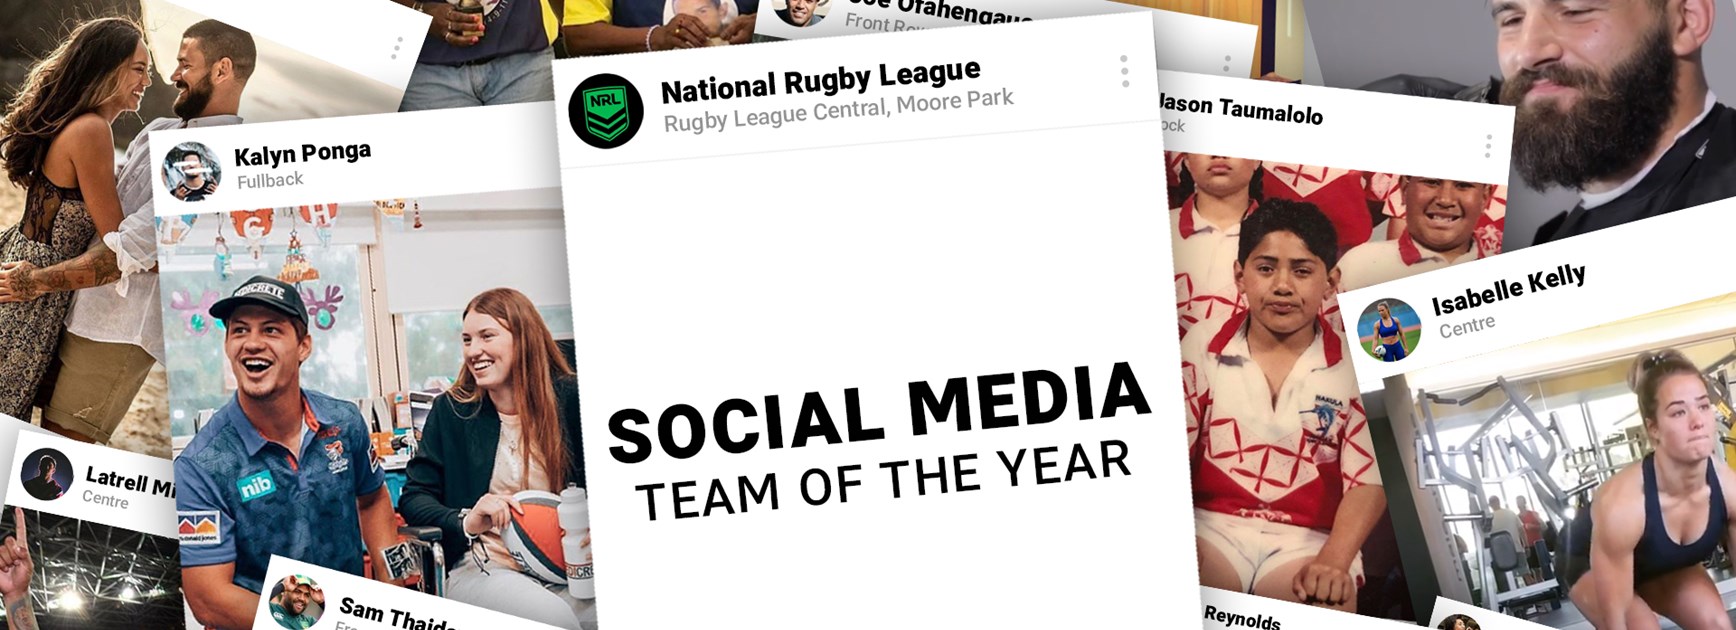 NRL Social Media Team of the Year